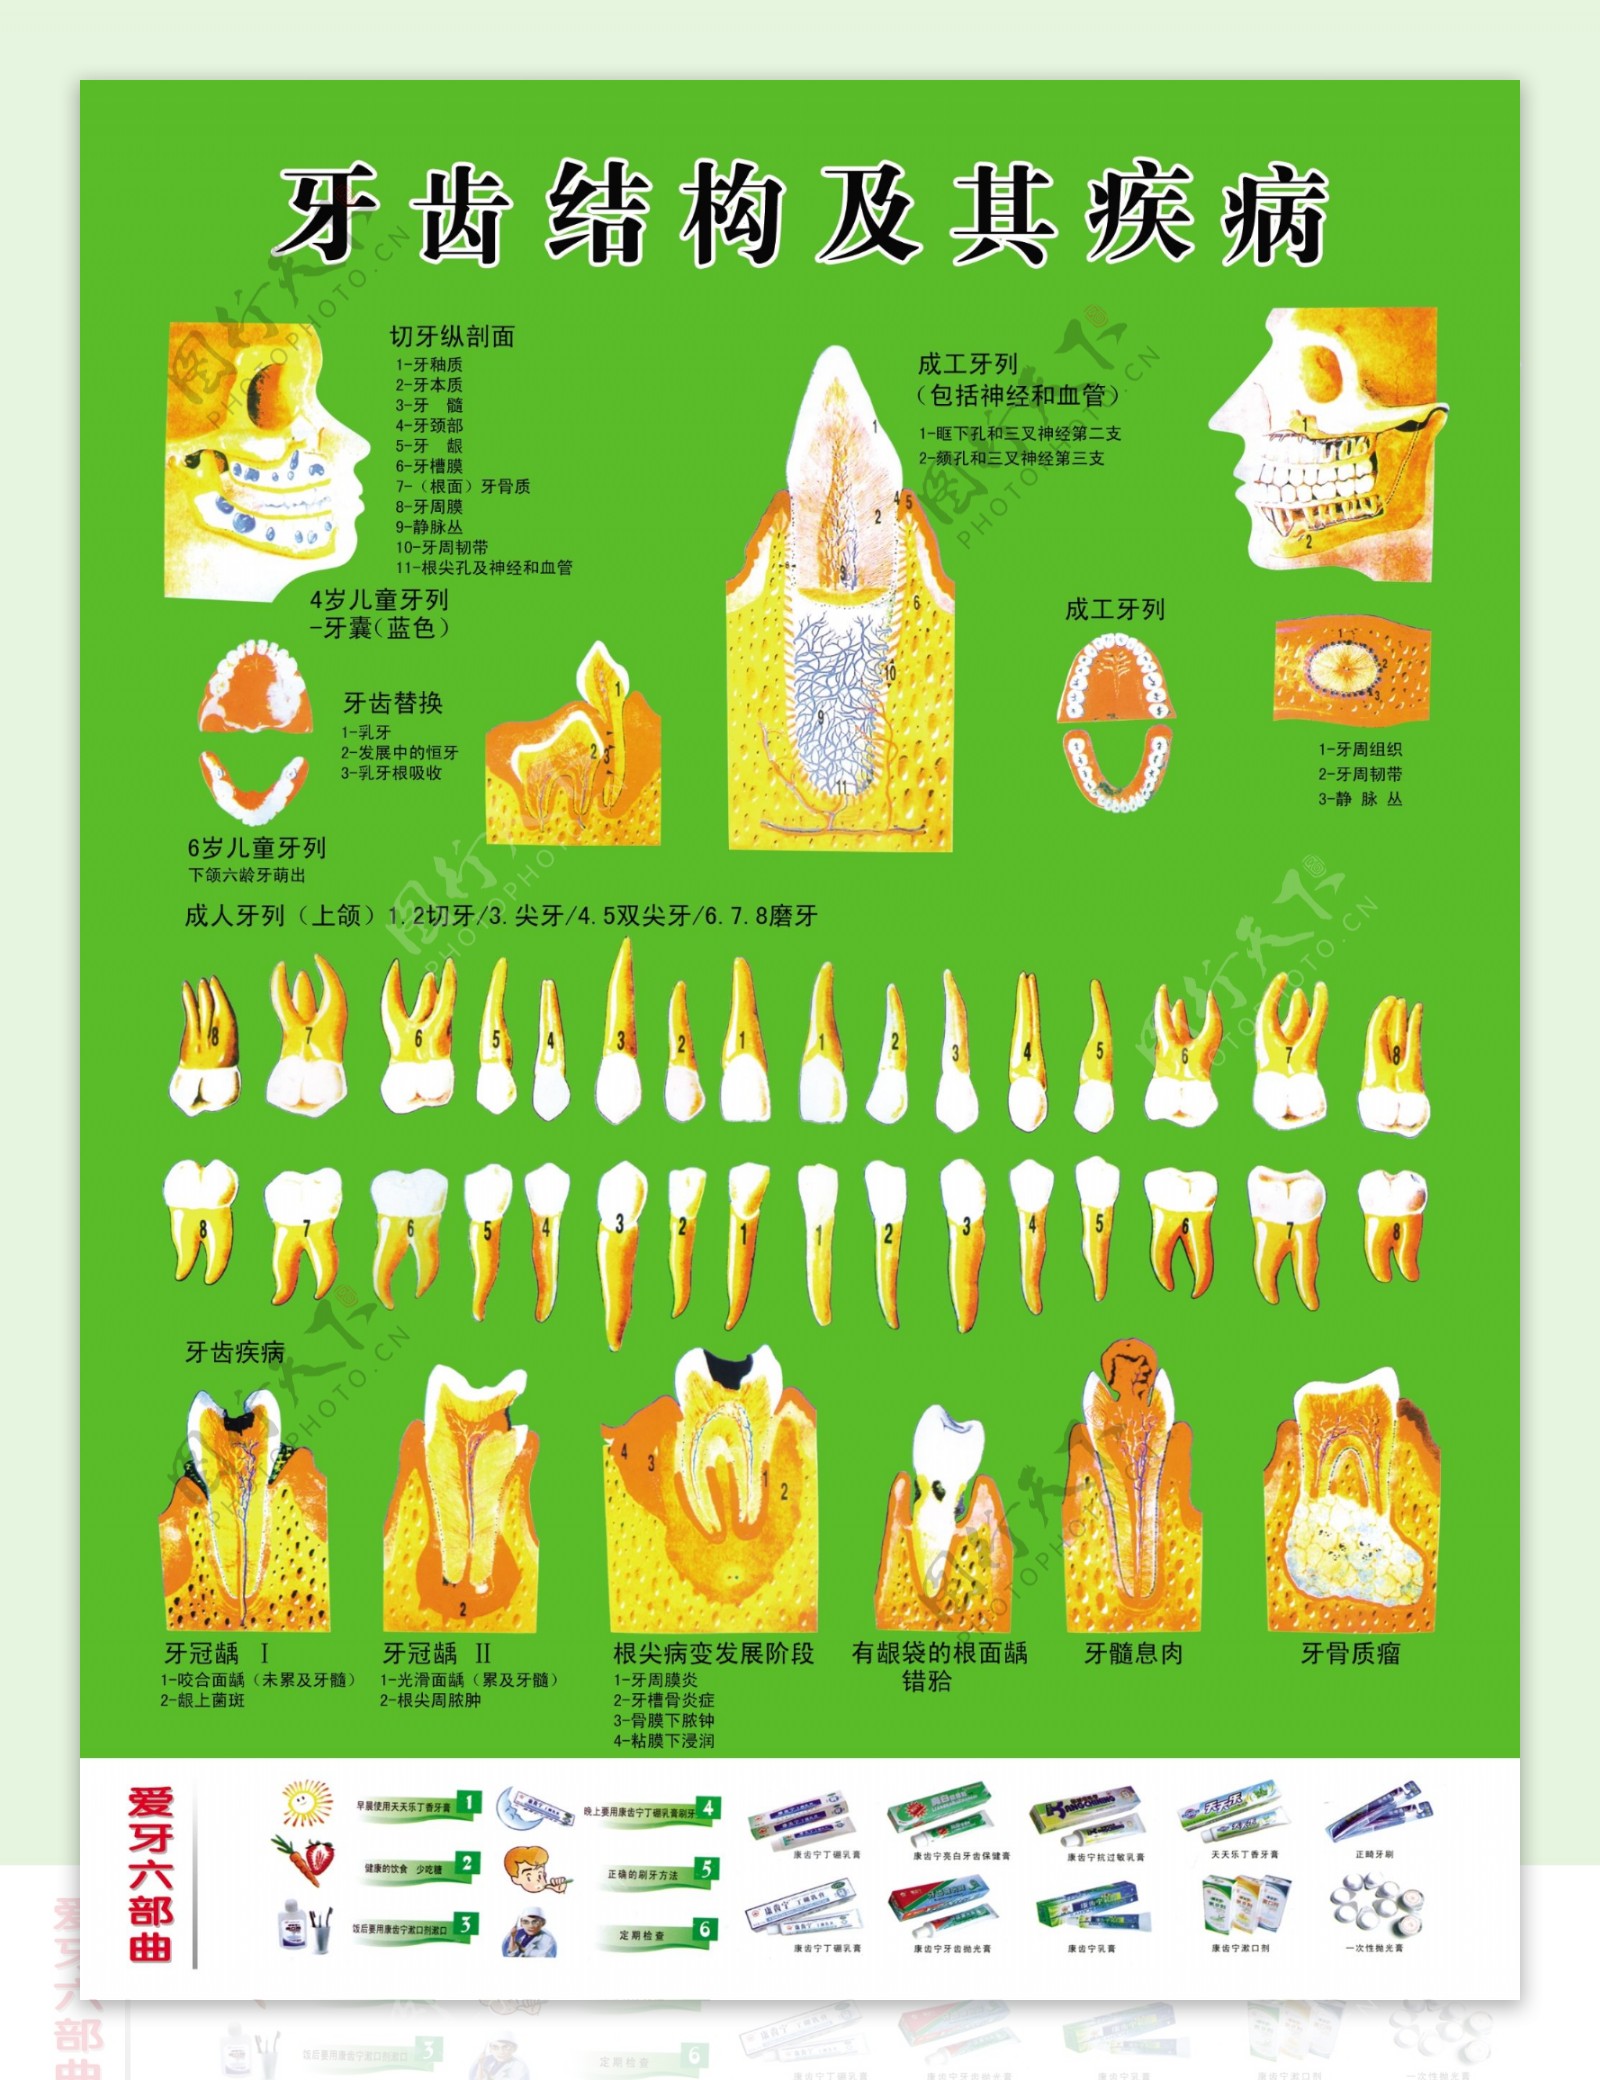 牙齿结构及其疾病图片